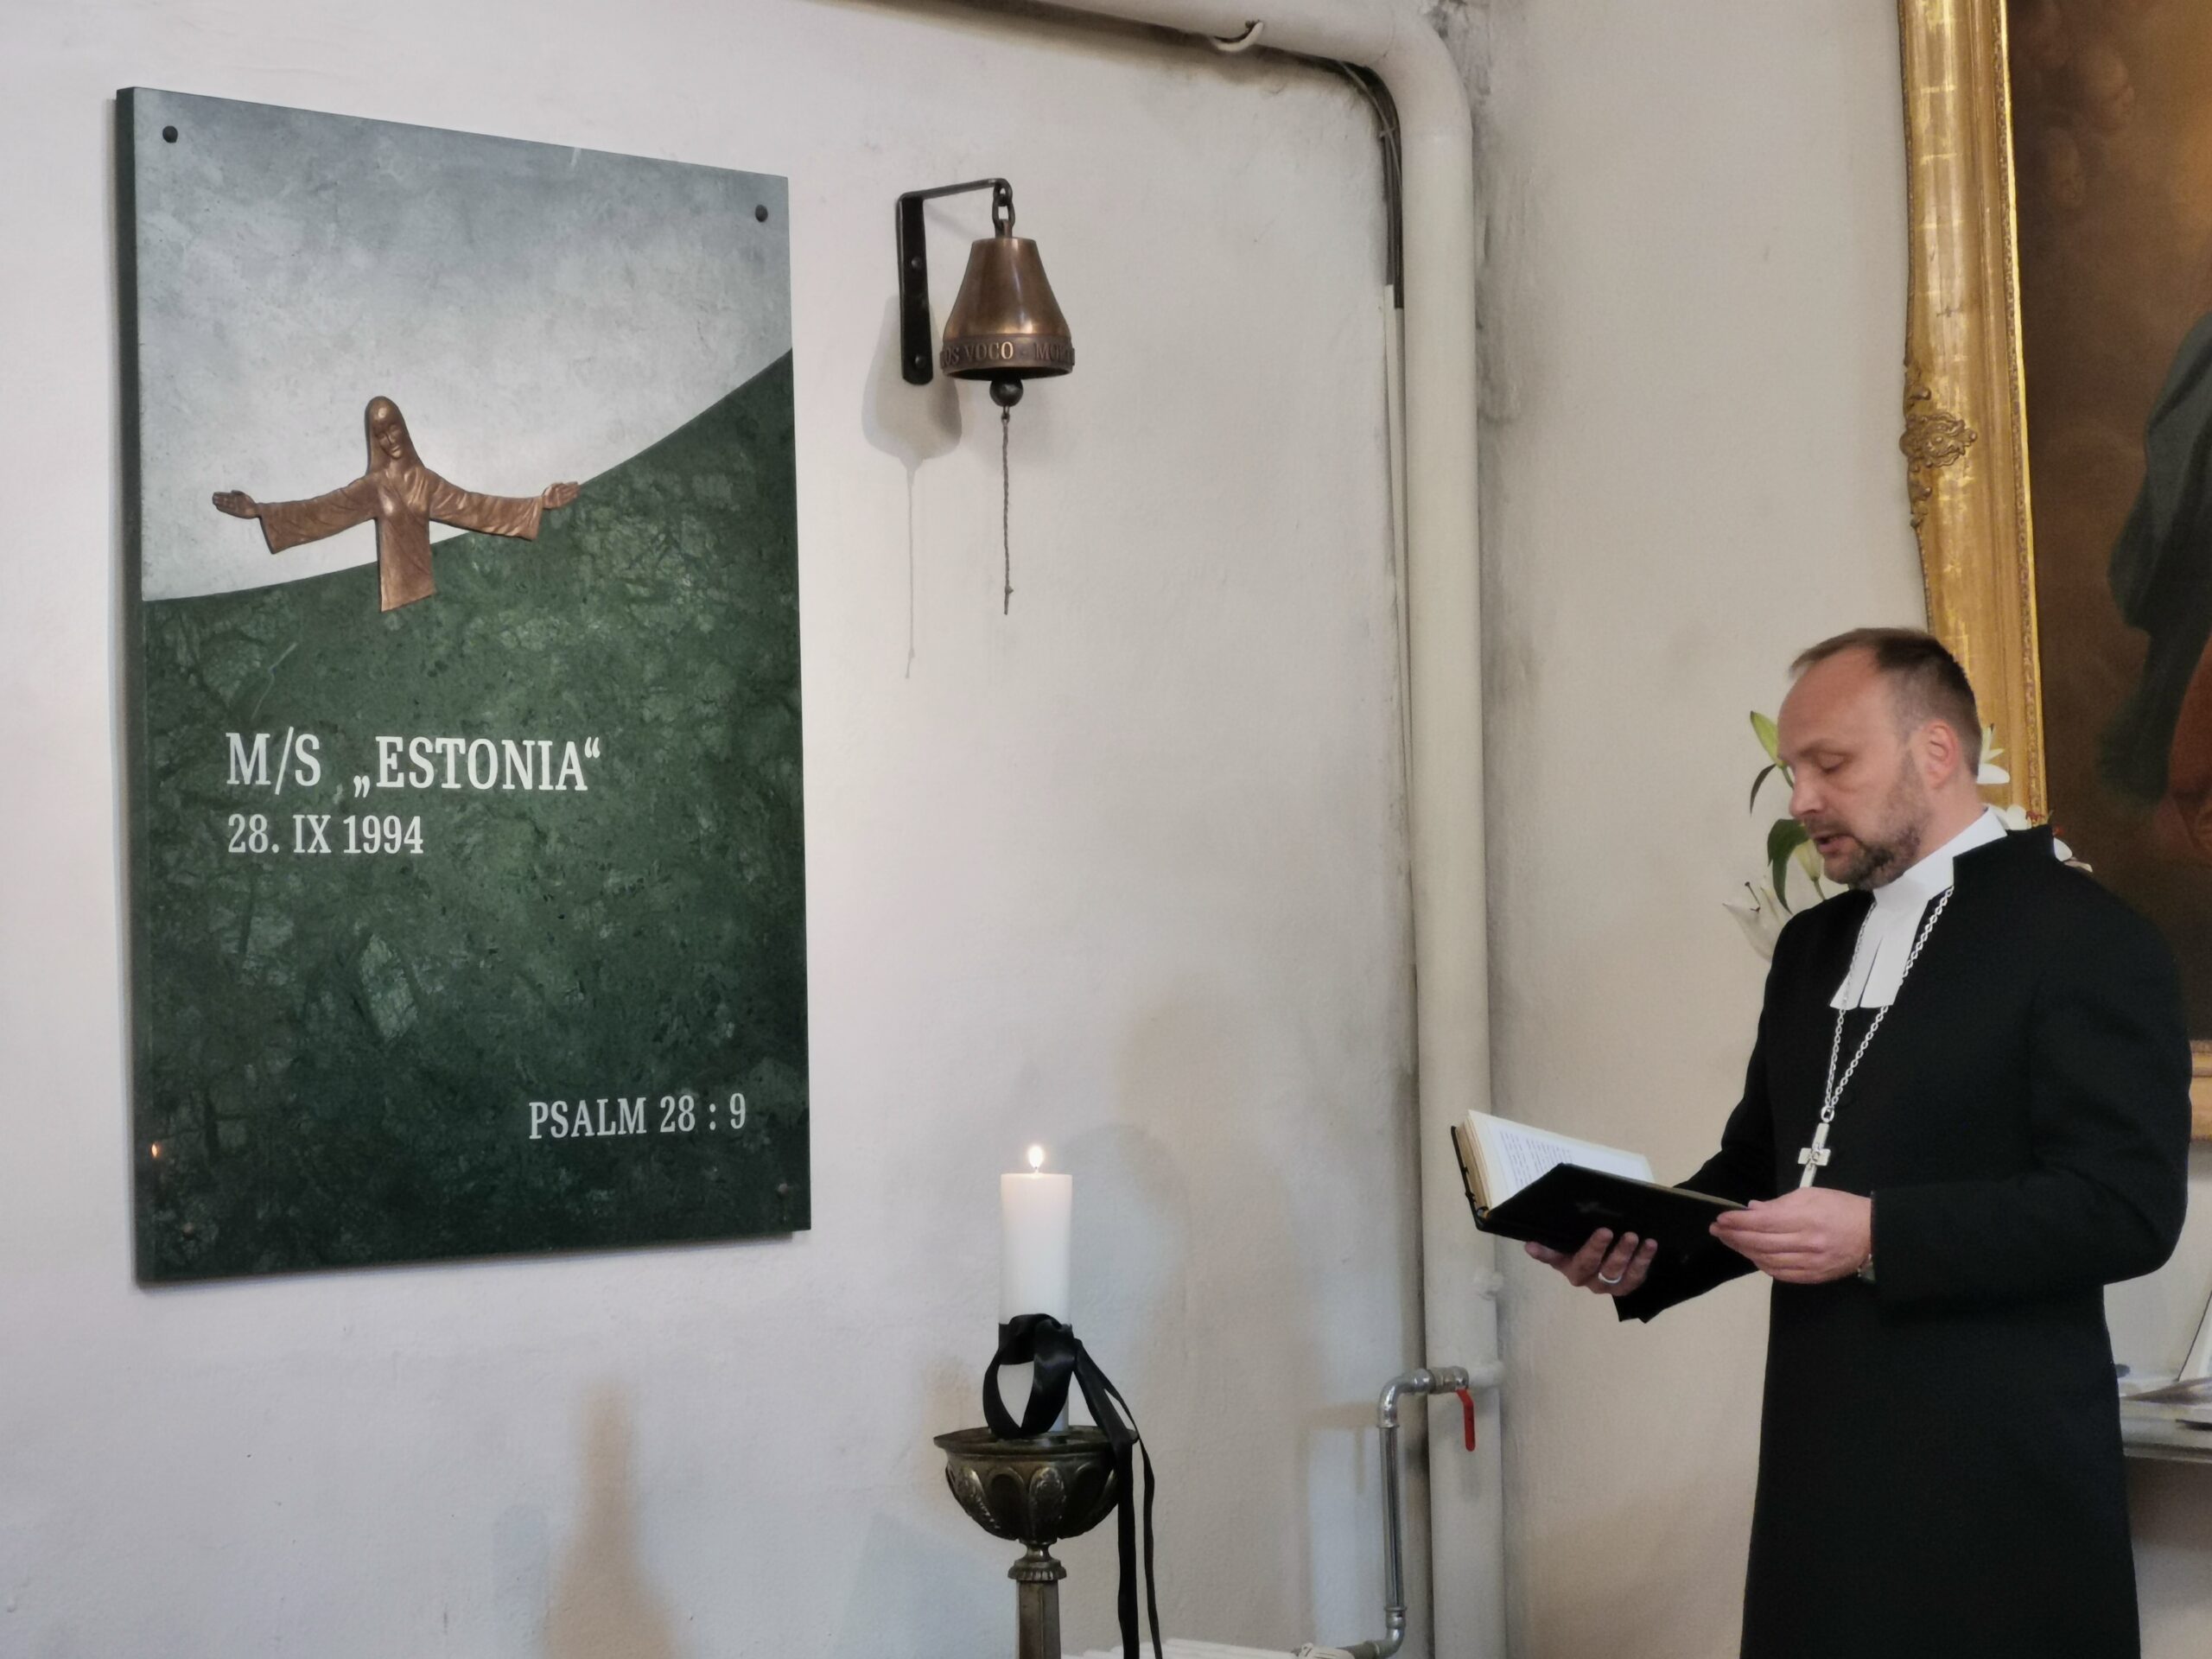 M/S “Estonia” mälestustahvel Tallinna Toomkirikus ei luba hukkunuid unustada